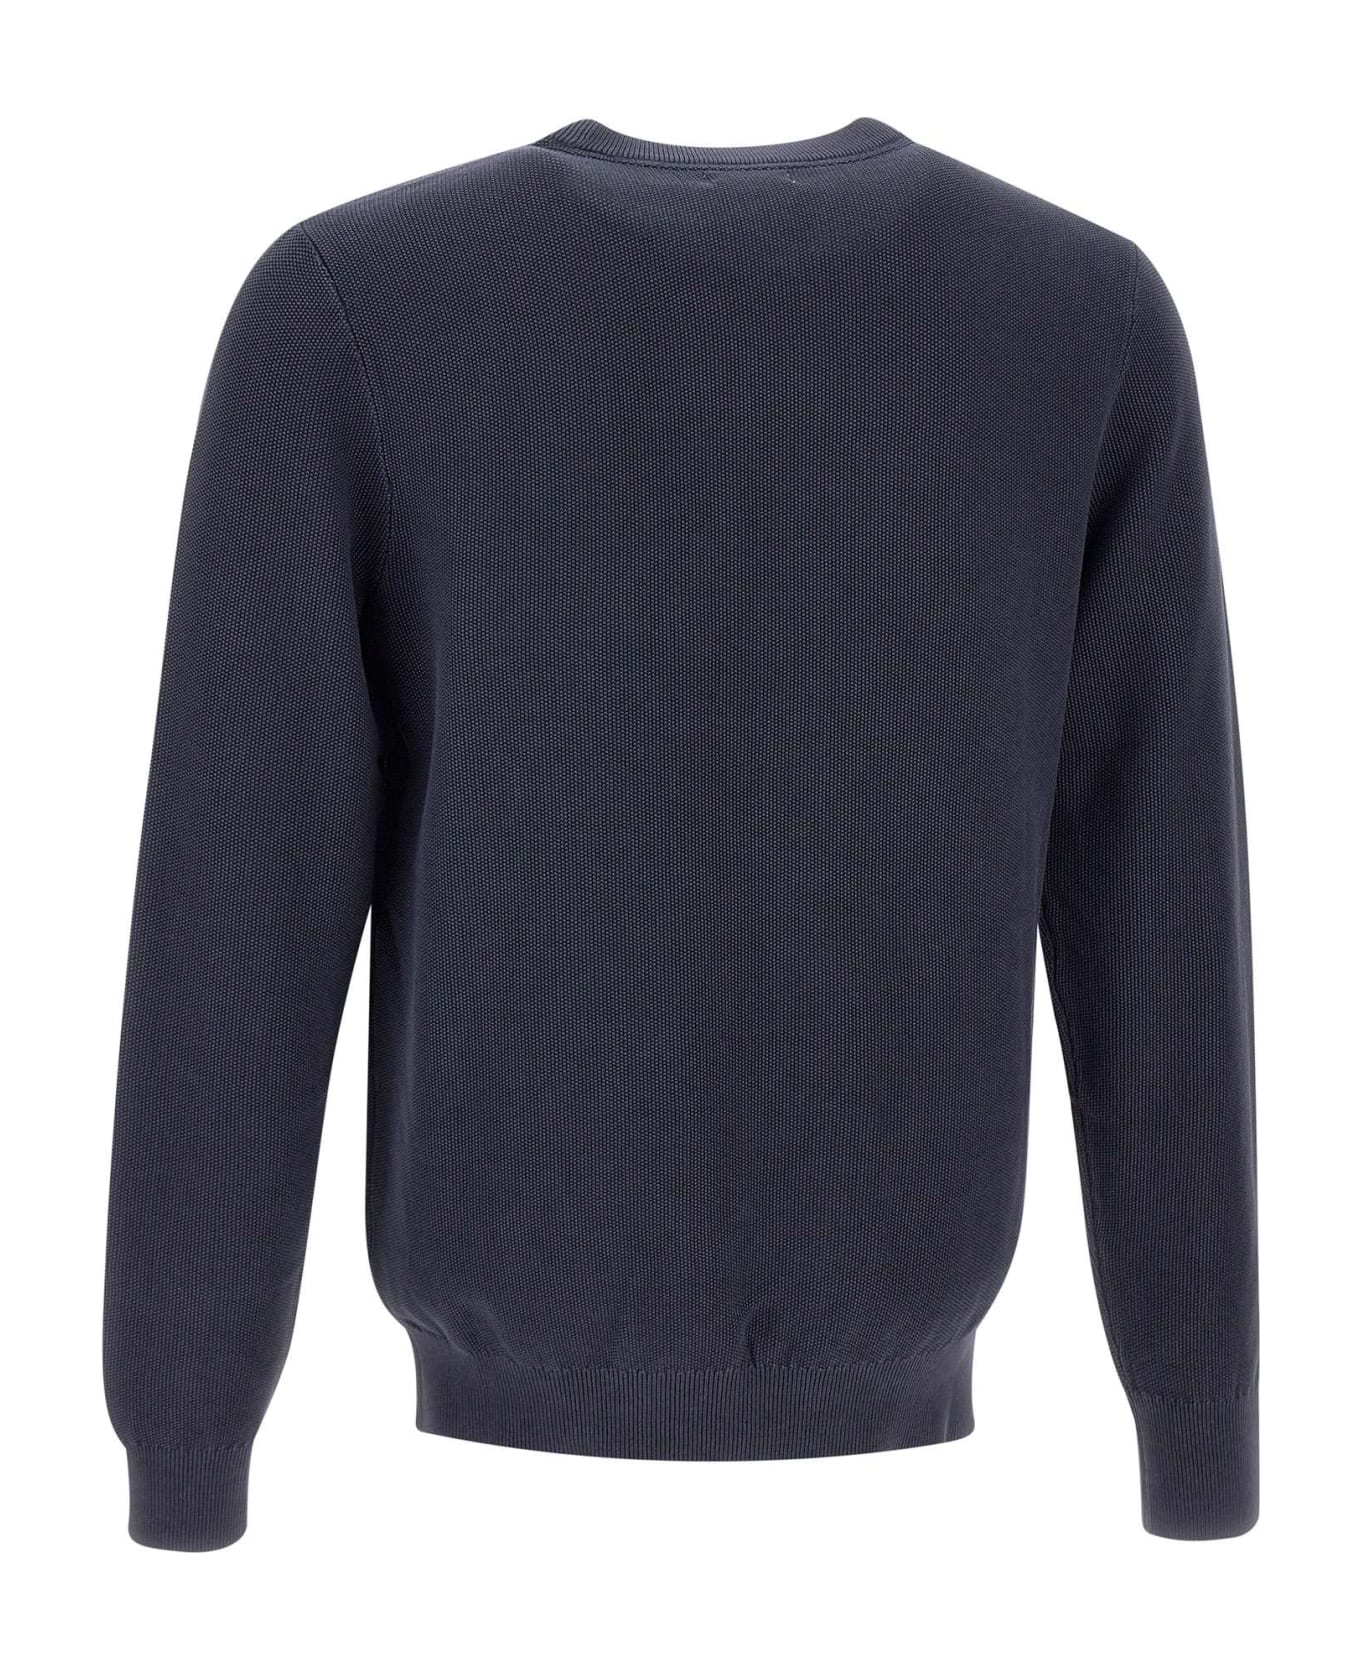 Sun 68 'round Vintage' Cotton Sweater Sun 68 - BLUE ニットウェア